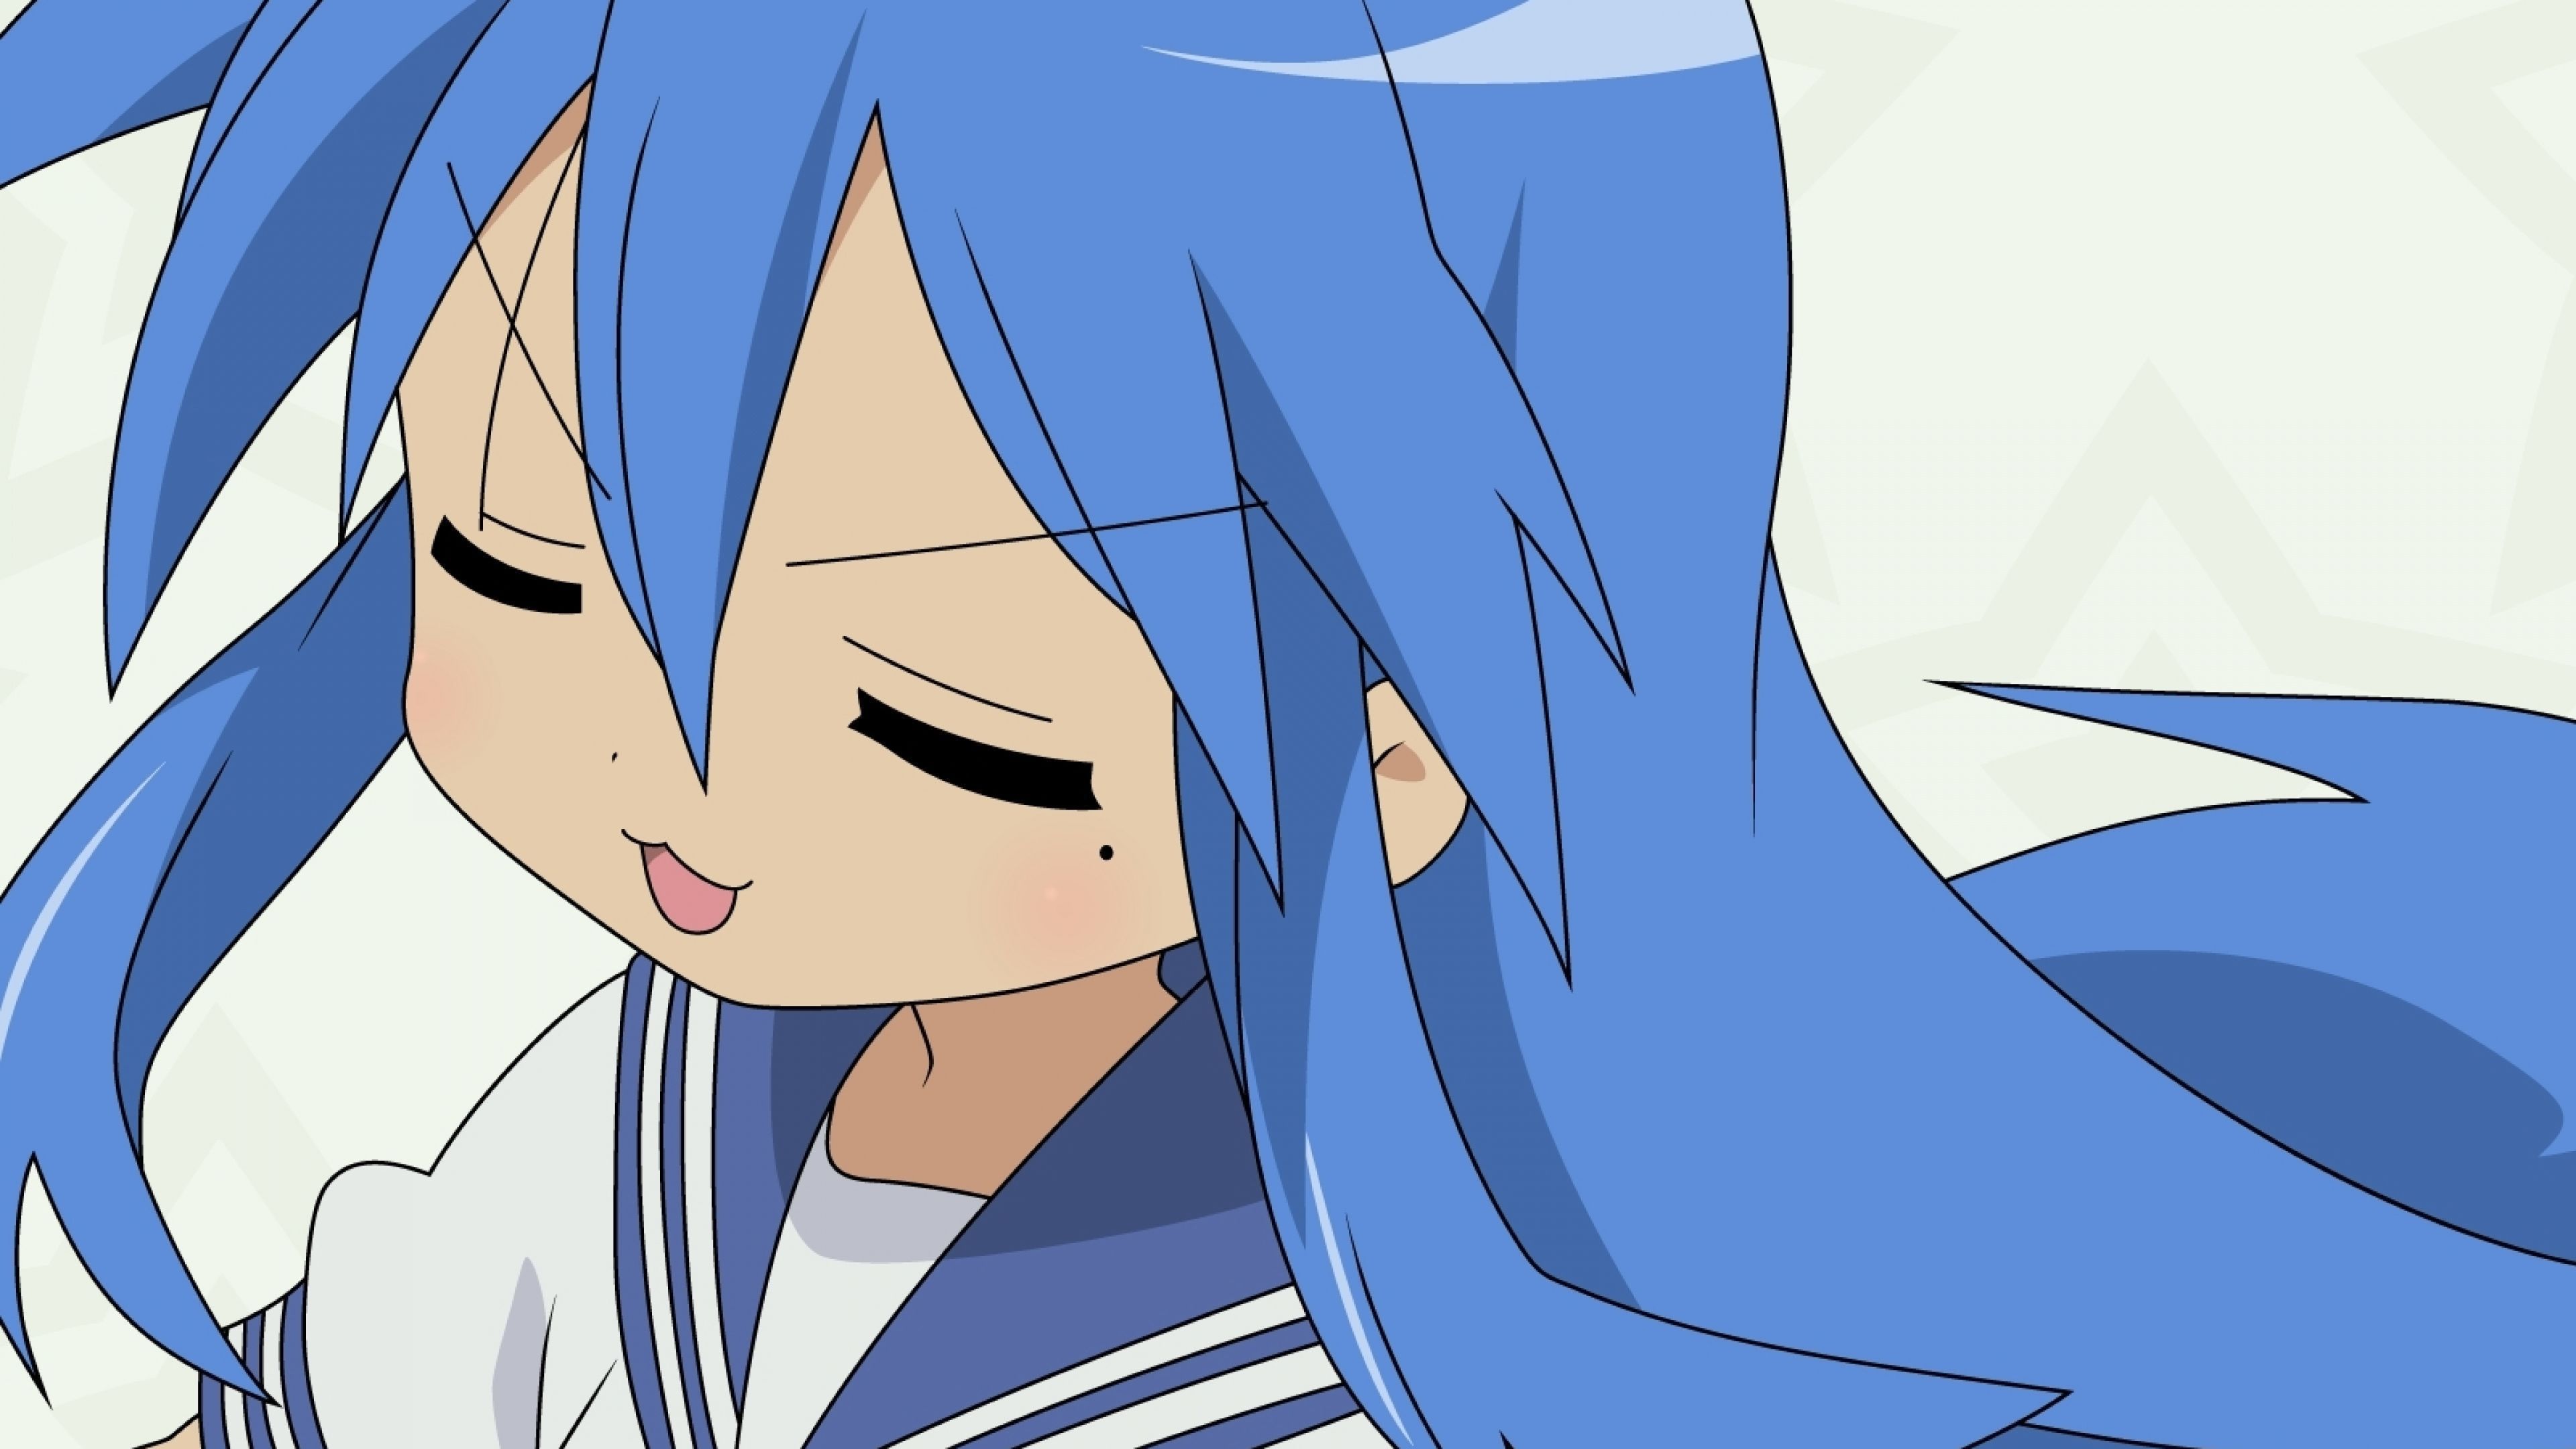 konata wallpaper,cartoon,face,blue,facial expression,anime